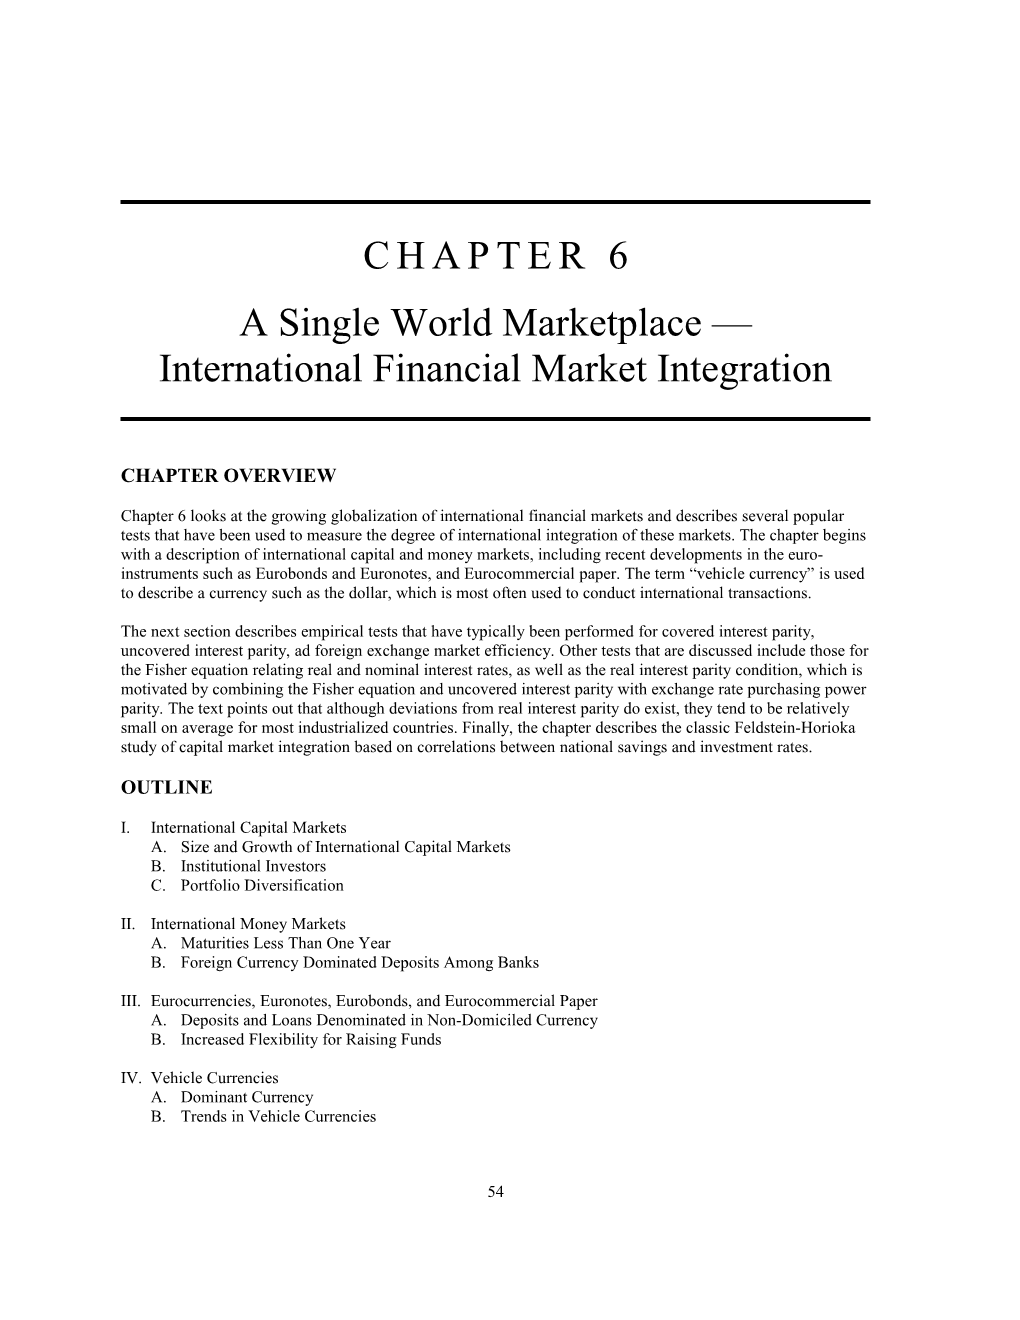 International Financial Market Integration